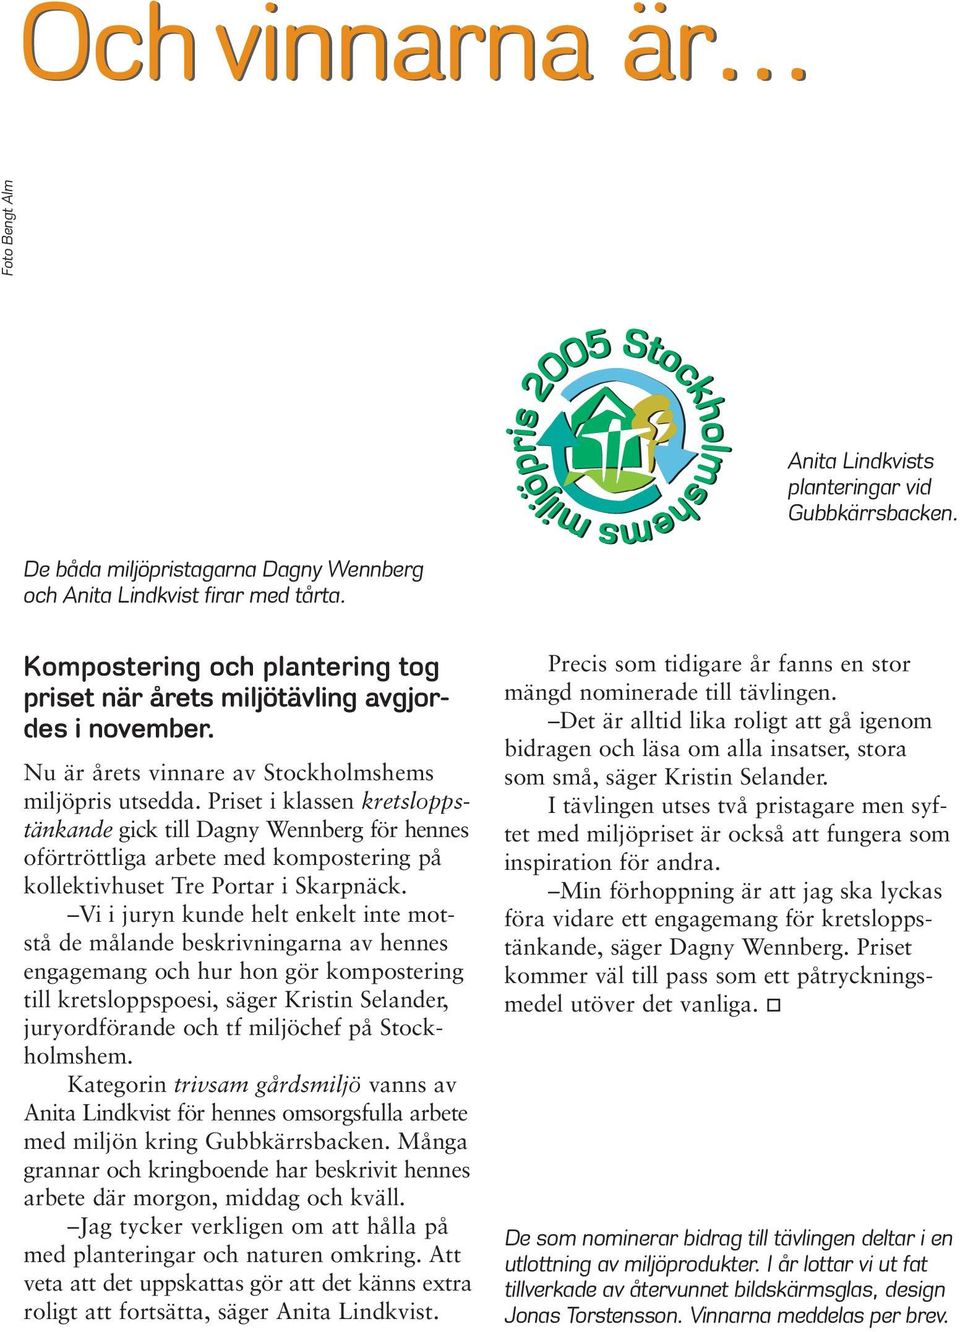 Priset i klassen kretsloppstänkande gick till Dagny Wennberg för hennes oförtröttliga arbete med kompostering på kollektivhuset Tre Portar i Skarpnäck.